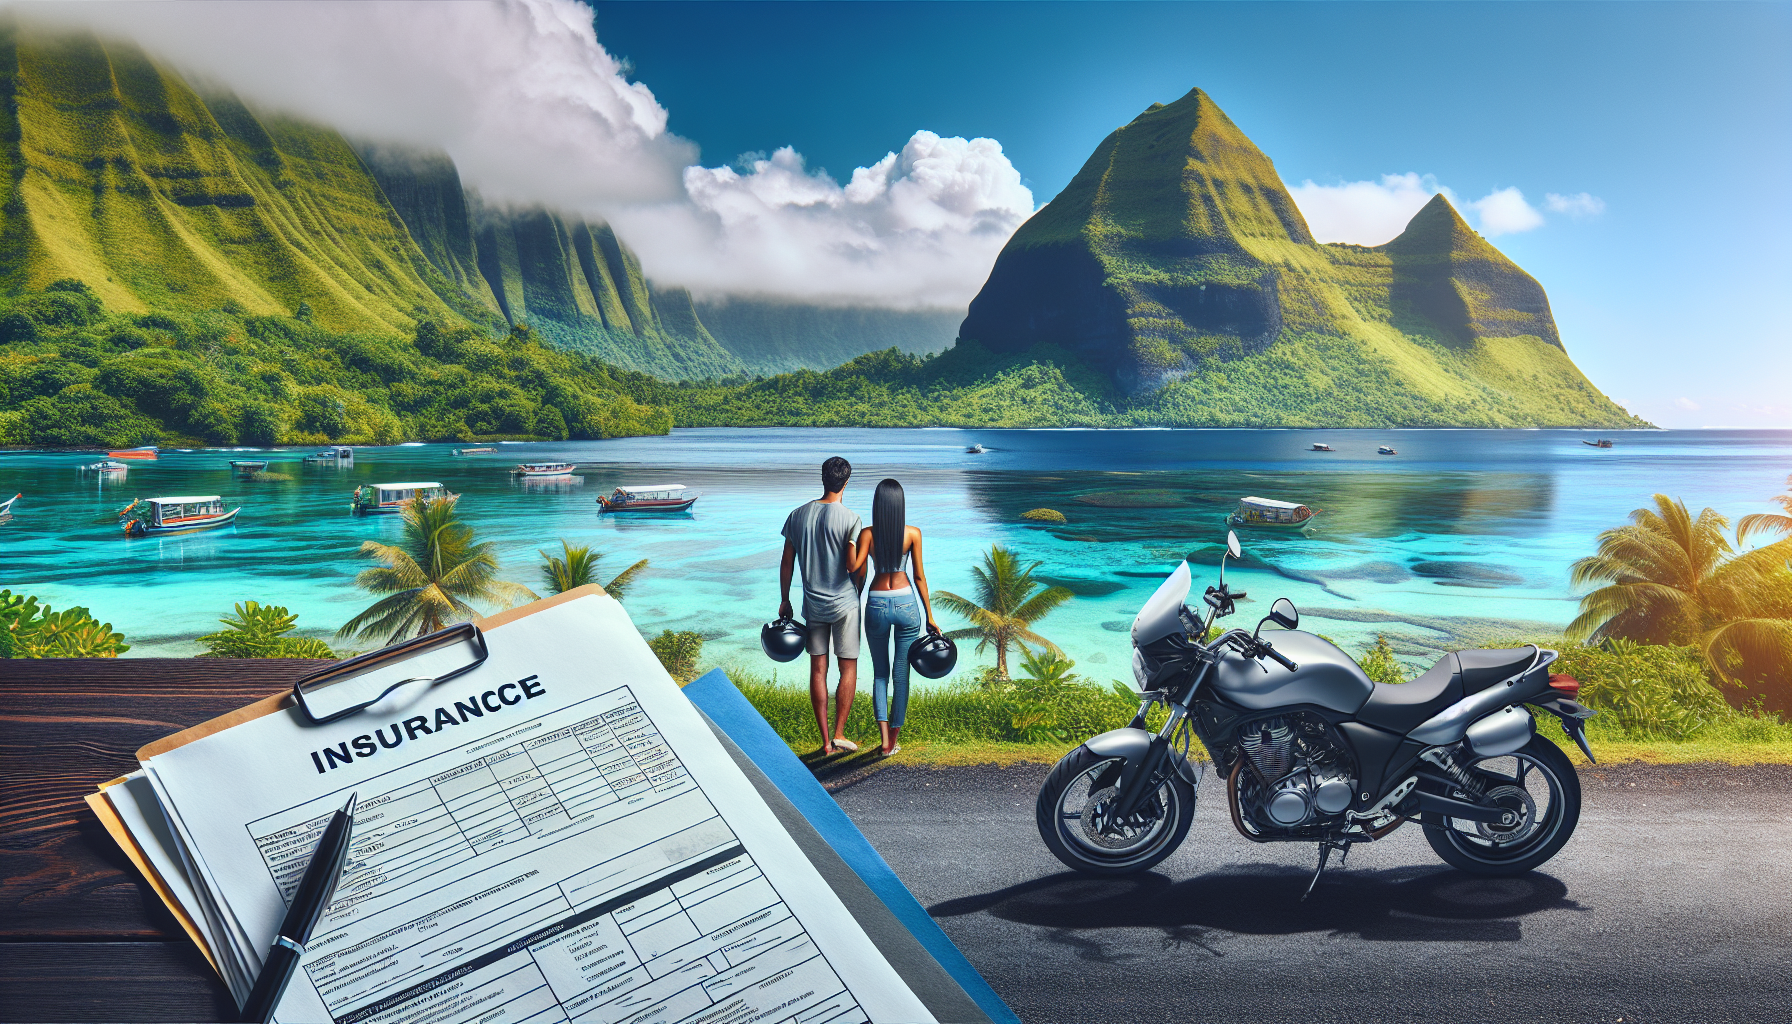 découvrez les étapes simples pour souscrire une assurance moto à la réunion avec notre guide. protégez-vous sur les routes de l'île grâce à une assurance moto adaptée à vos besoins.